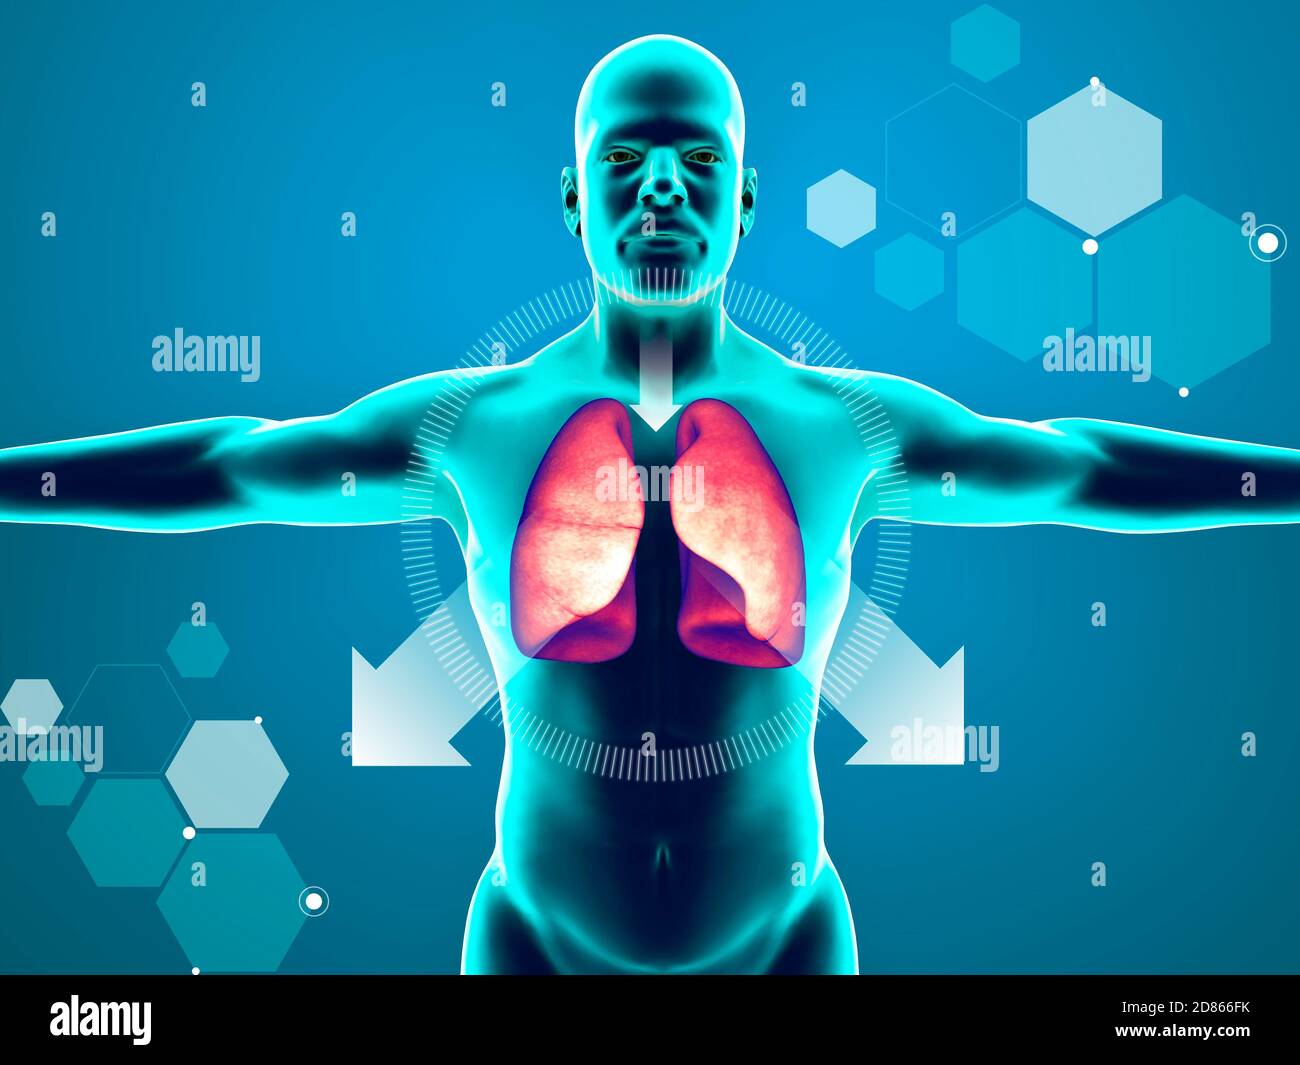 Anatomie des menschlichen Körpers, Lunge und Husten. Arzneimittel zum Lösen  von Schleim. Wirkung von Schleim, der sich in den Atemwegen ansammelt.  3d-Rendering Stockfotografie - Alamy